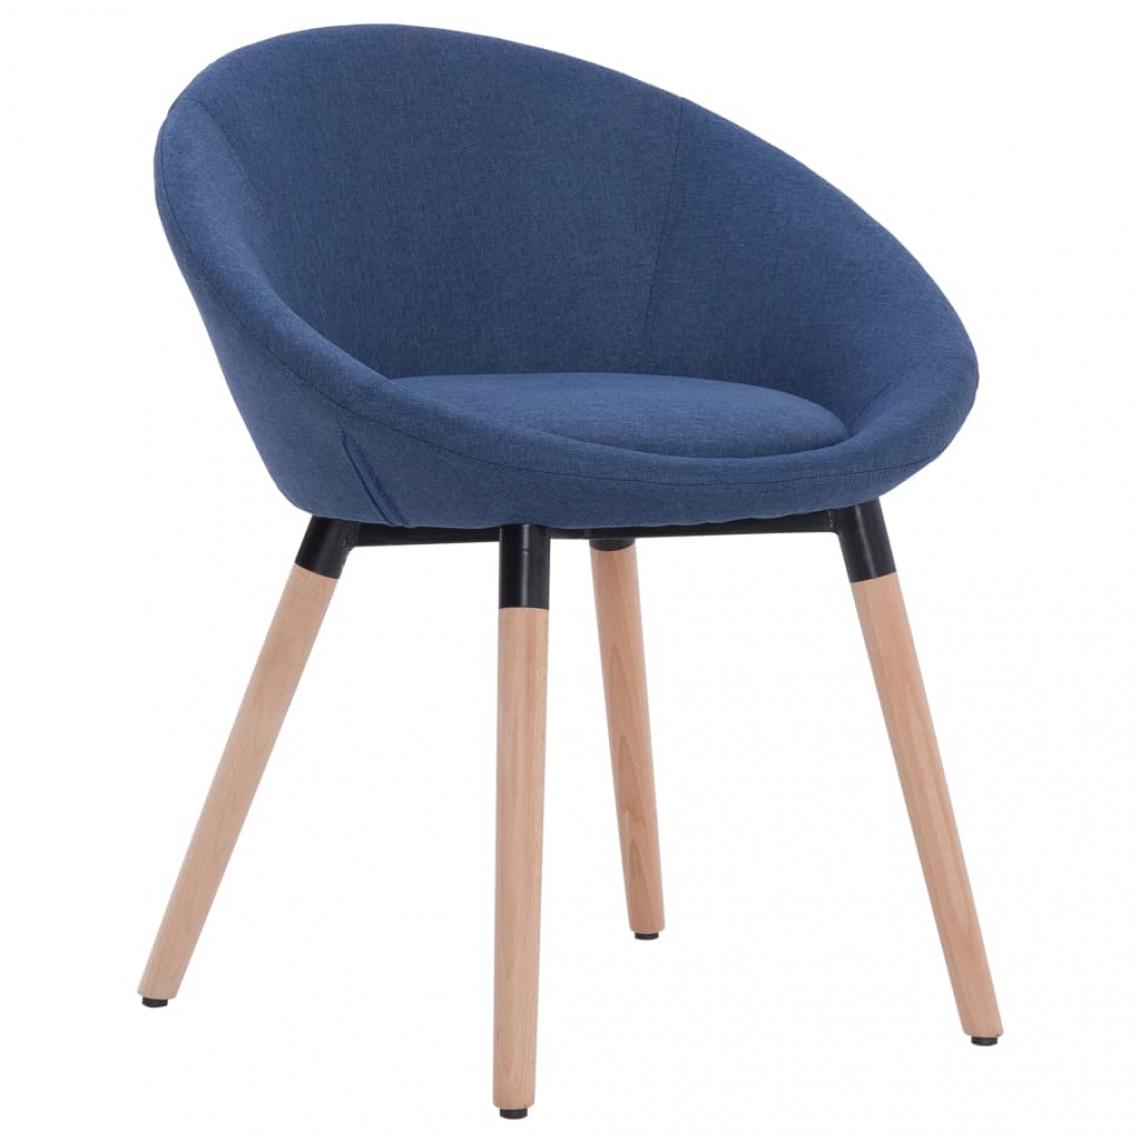 Decoshop26 - Chaise de salle à manger tissu bleu pieds en bois cadre métal CDS020014 - Chaises